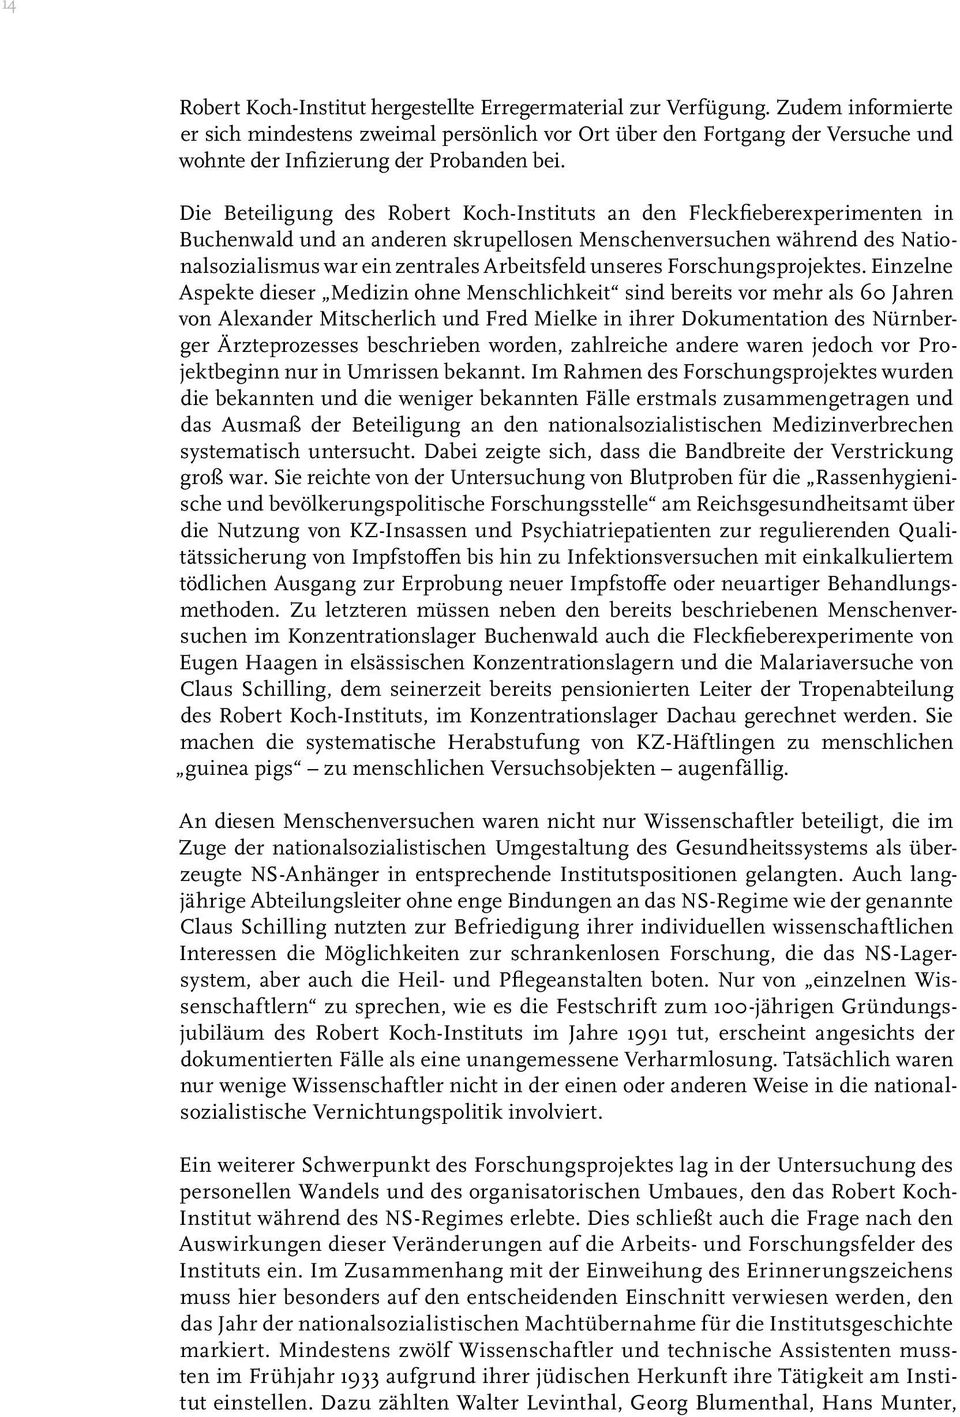 Die Beteiligung des Robert Koch-Instituts an den Fleckfieberexperimenten in Buchenwald und an anderen skrupellosen Menschenversuchen während des Nationalsozialismus war ein zentrales Arbeitsfeld